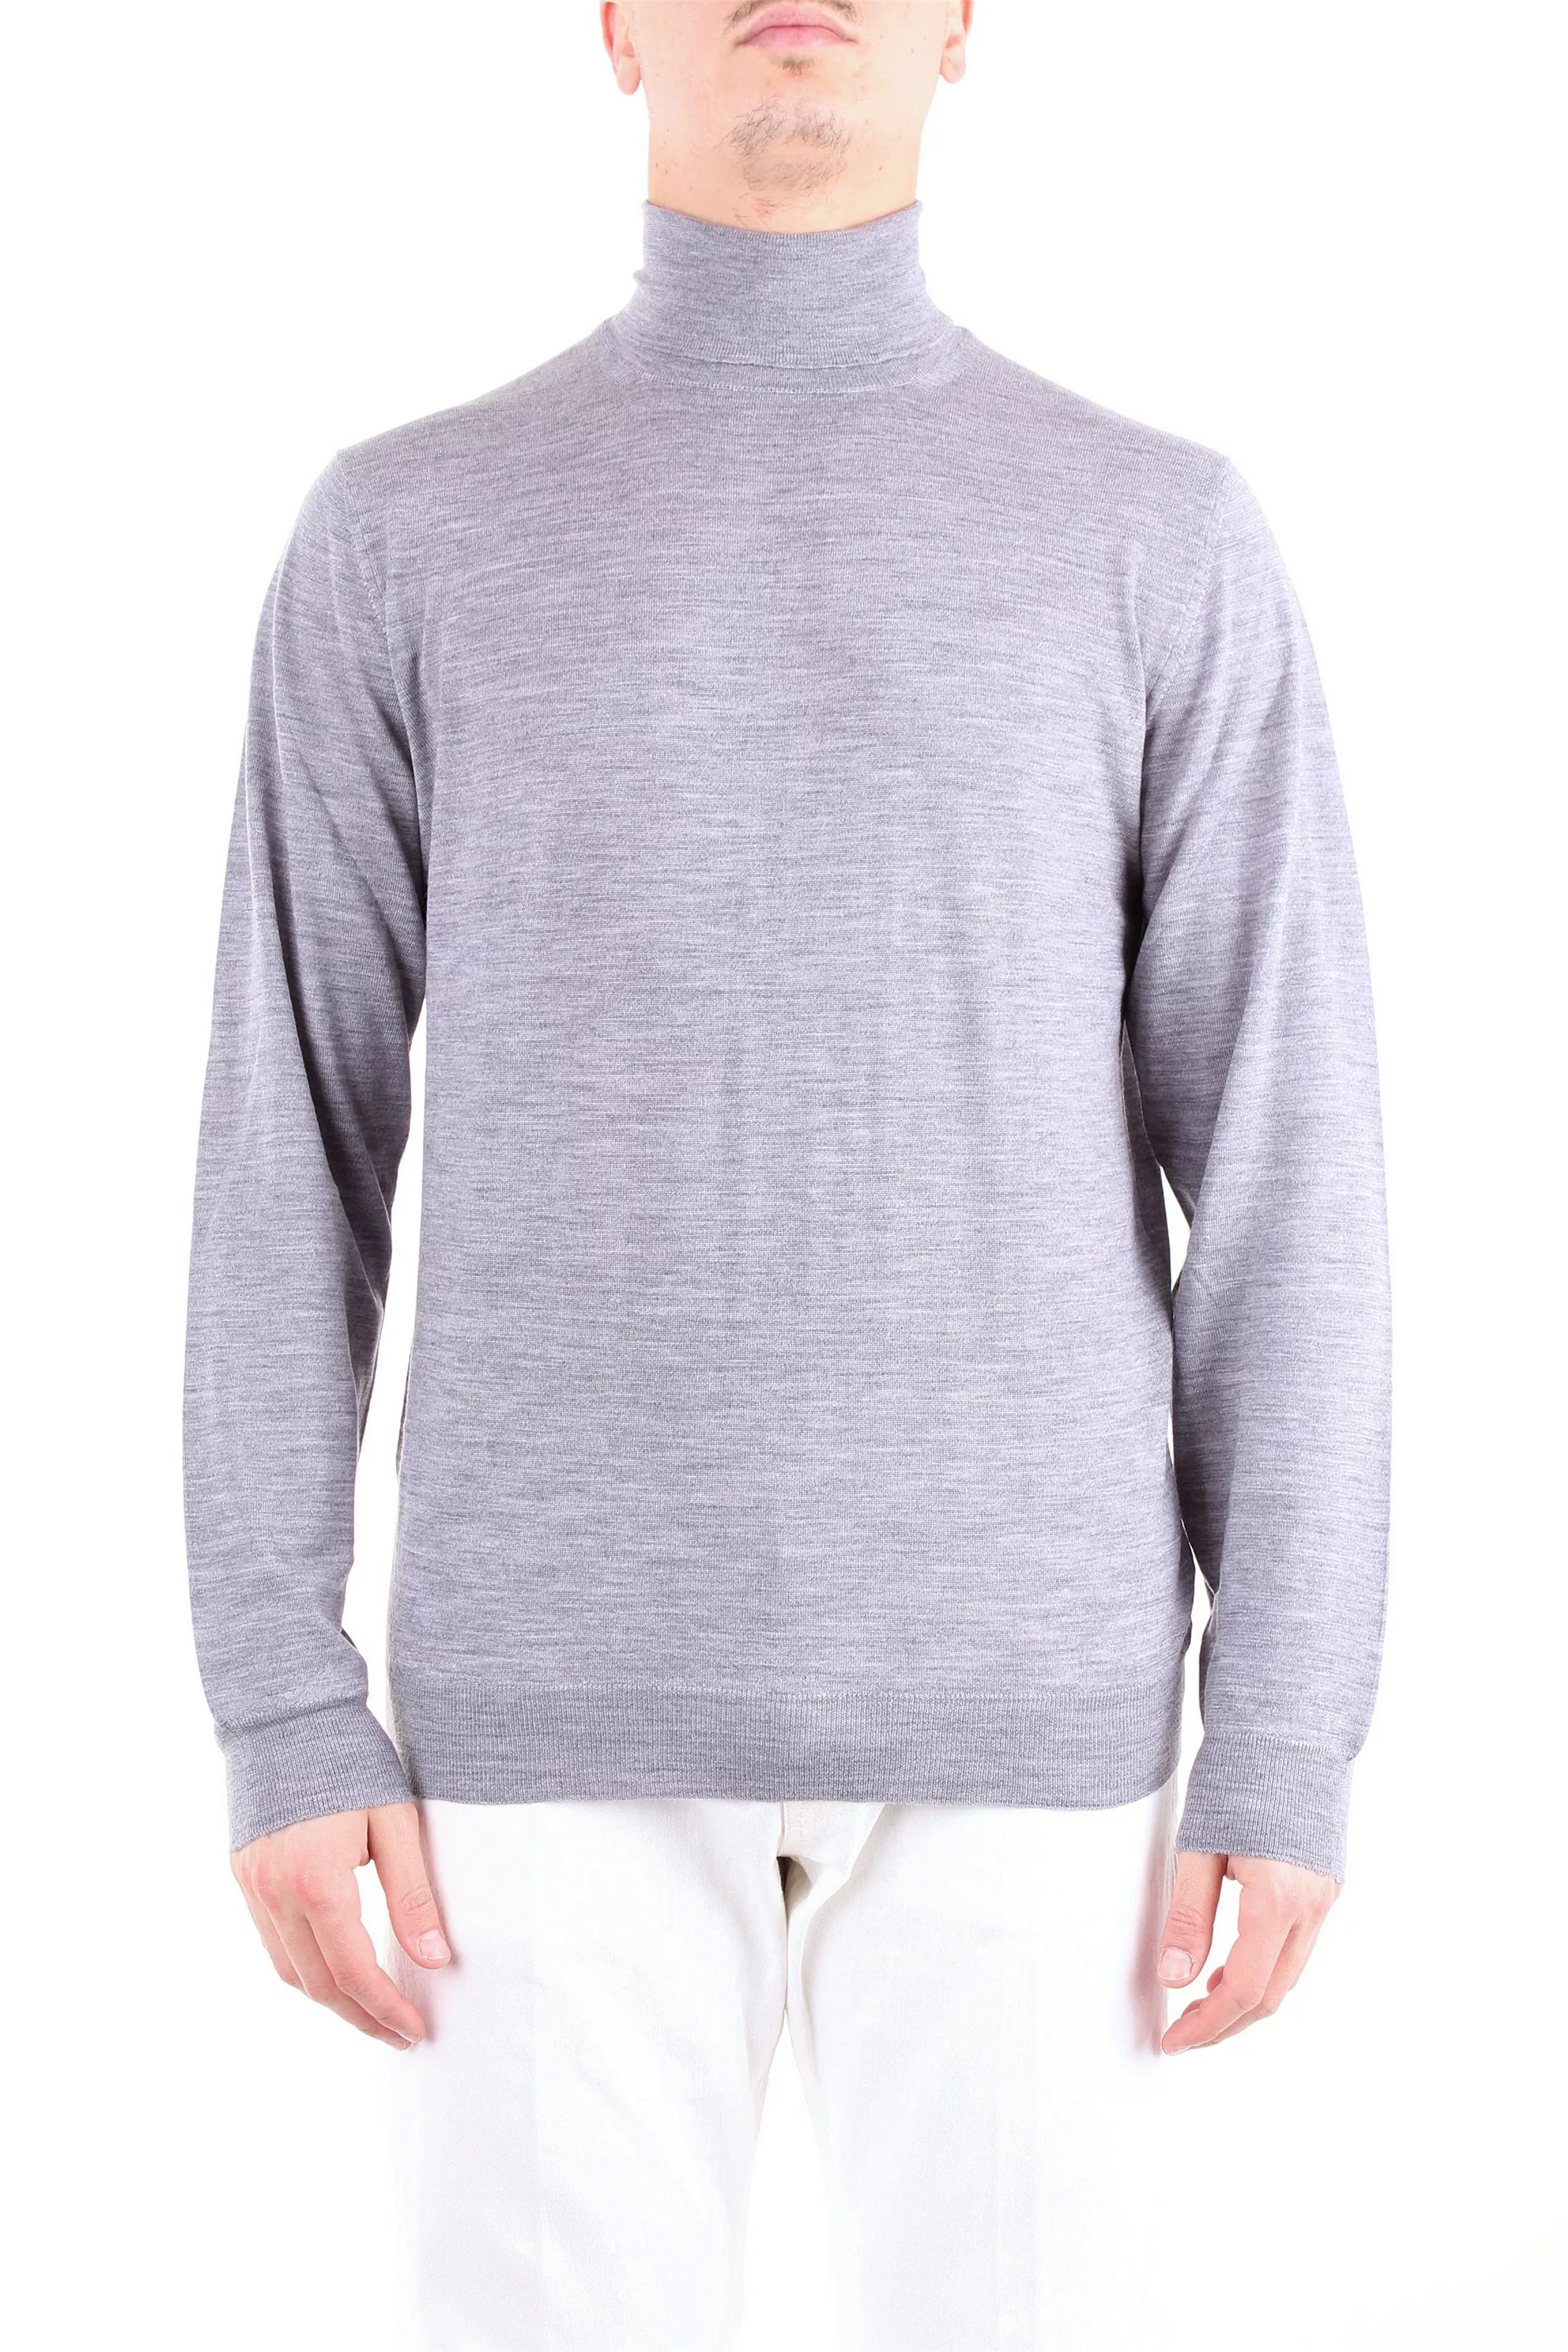 FEDELI Sweatshirt Herren grau 100% Wolle günstig online kaufen